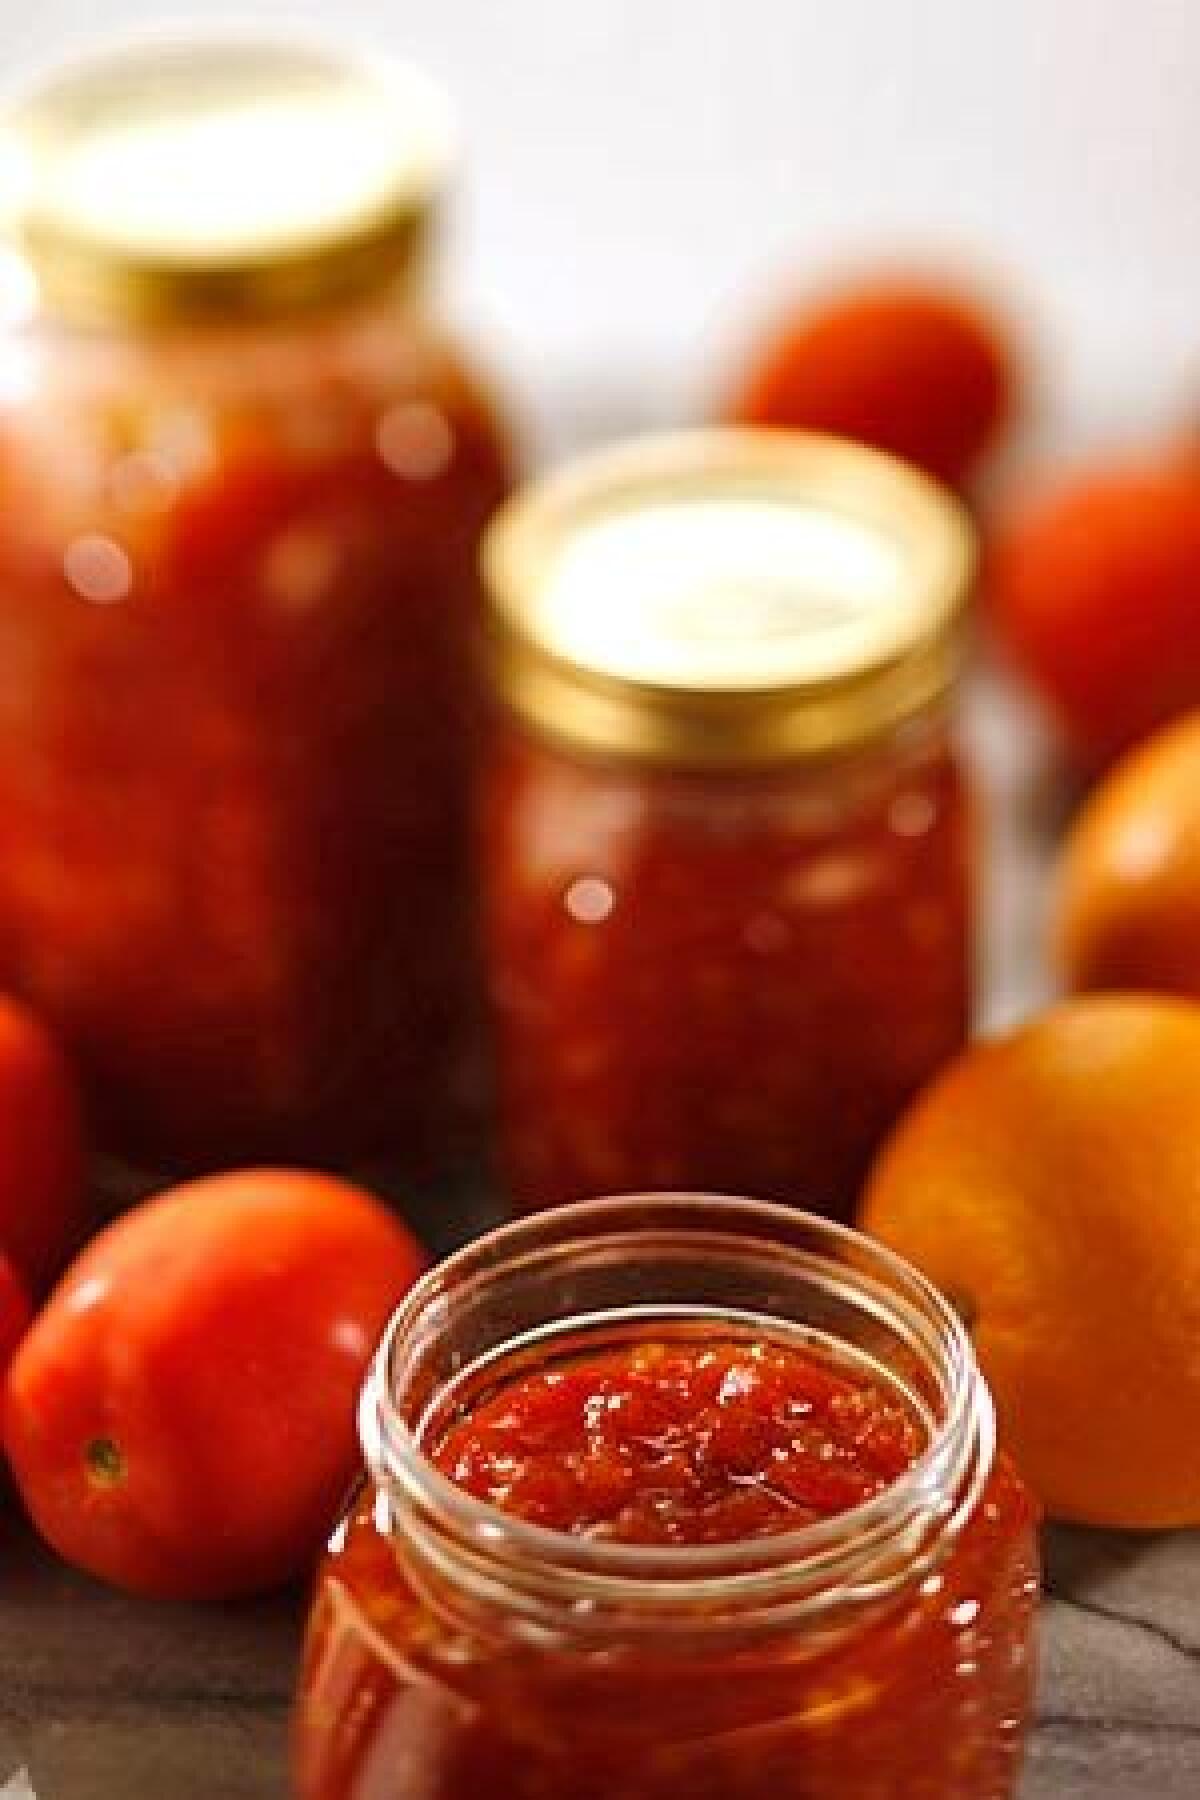 Recipe: Tomato marmalade